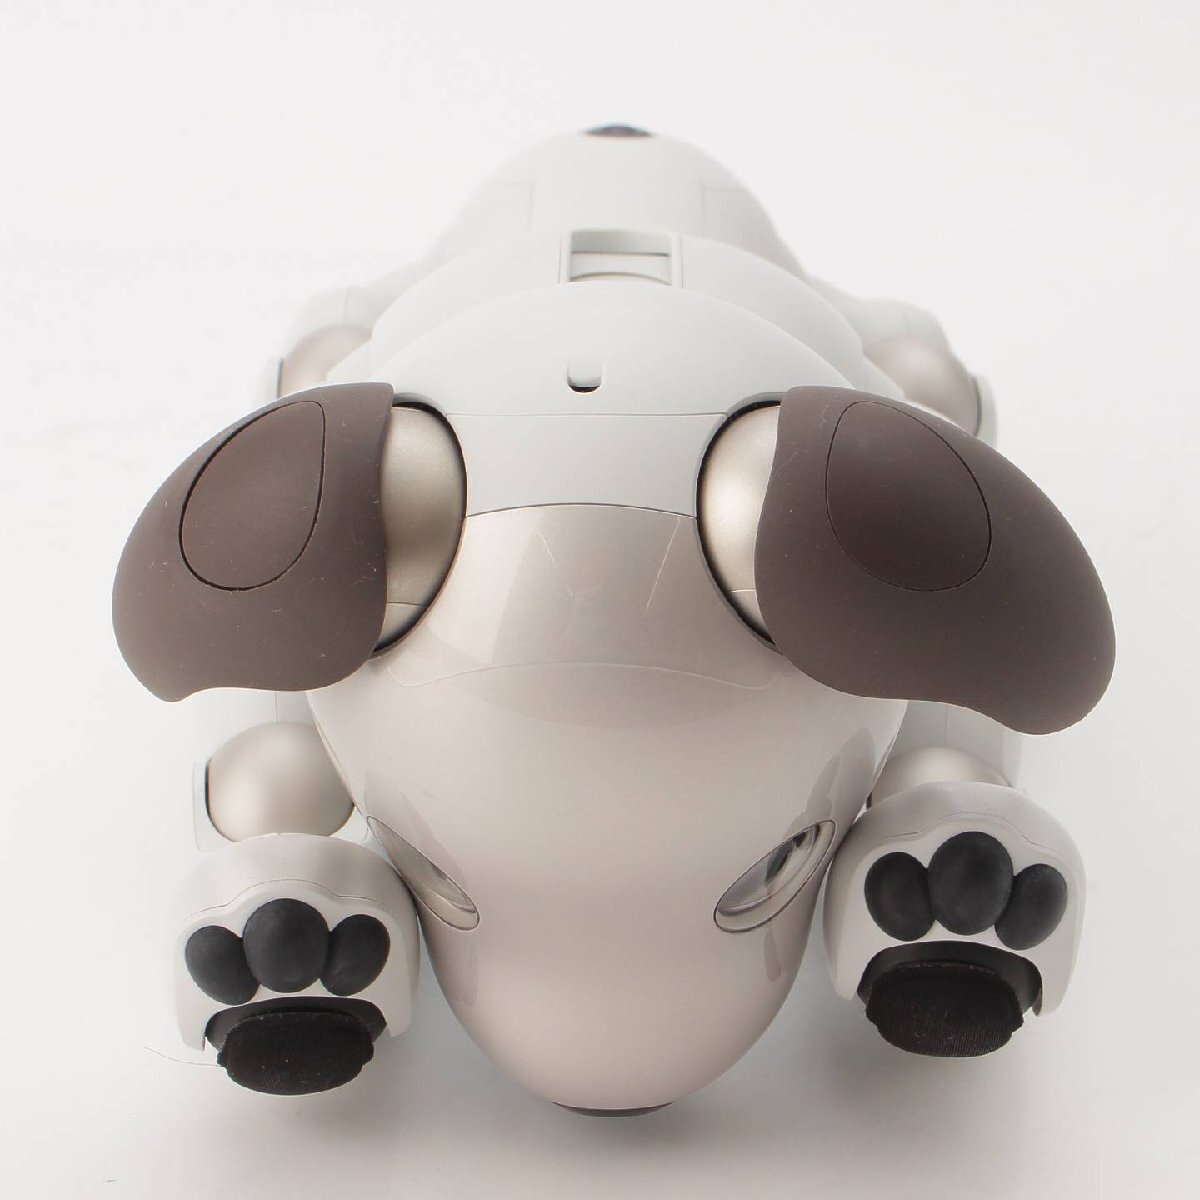 【ソニー】SONY　aibo 犬型 バーチャル ペットロボット ERS-1000 ベーシックホワイト 【中古】【正規品保証】201684_画像2